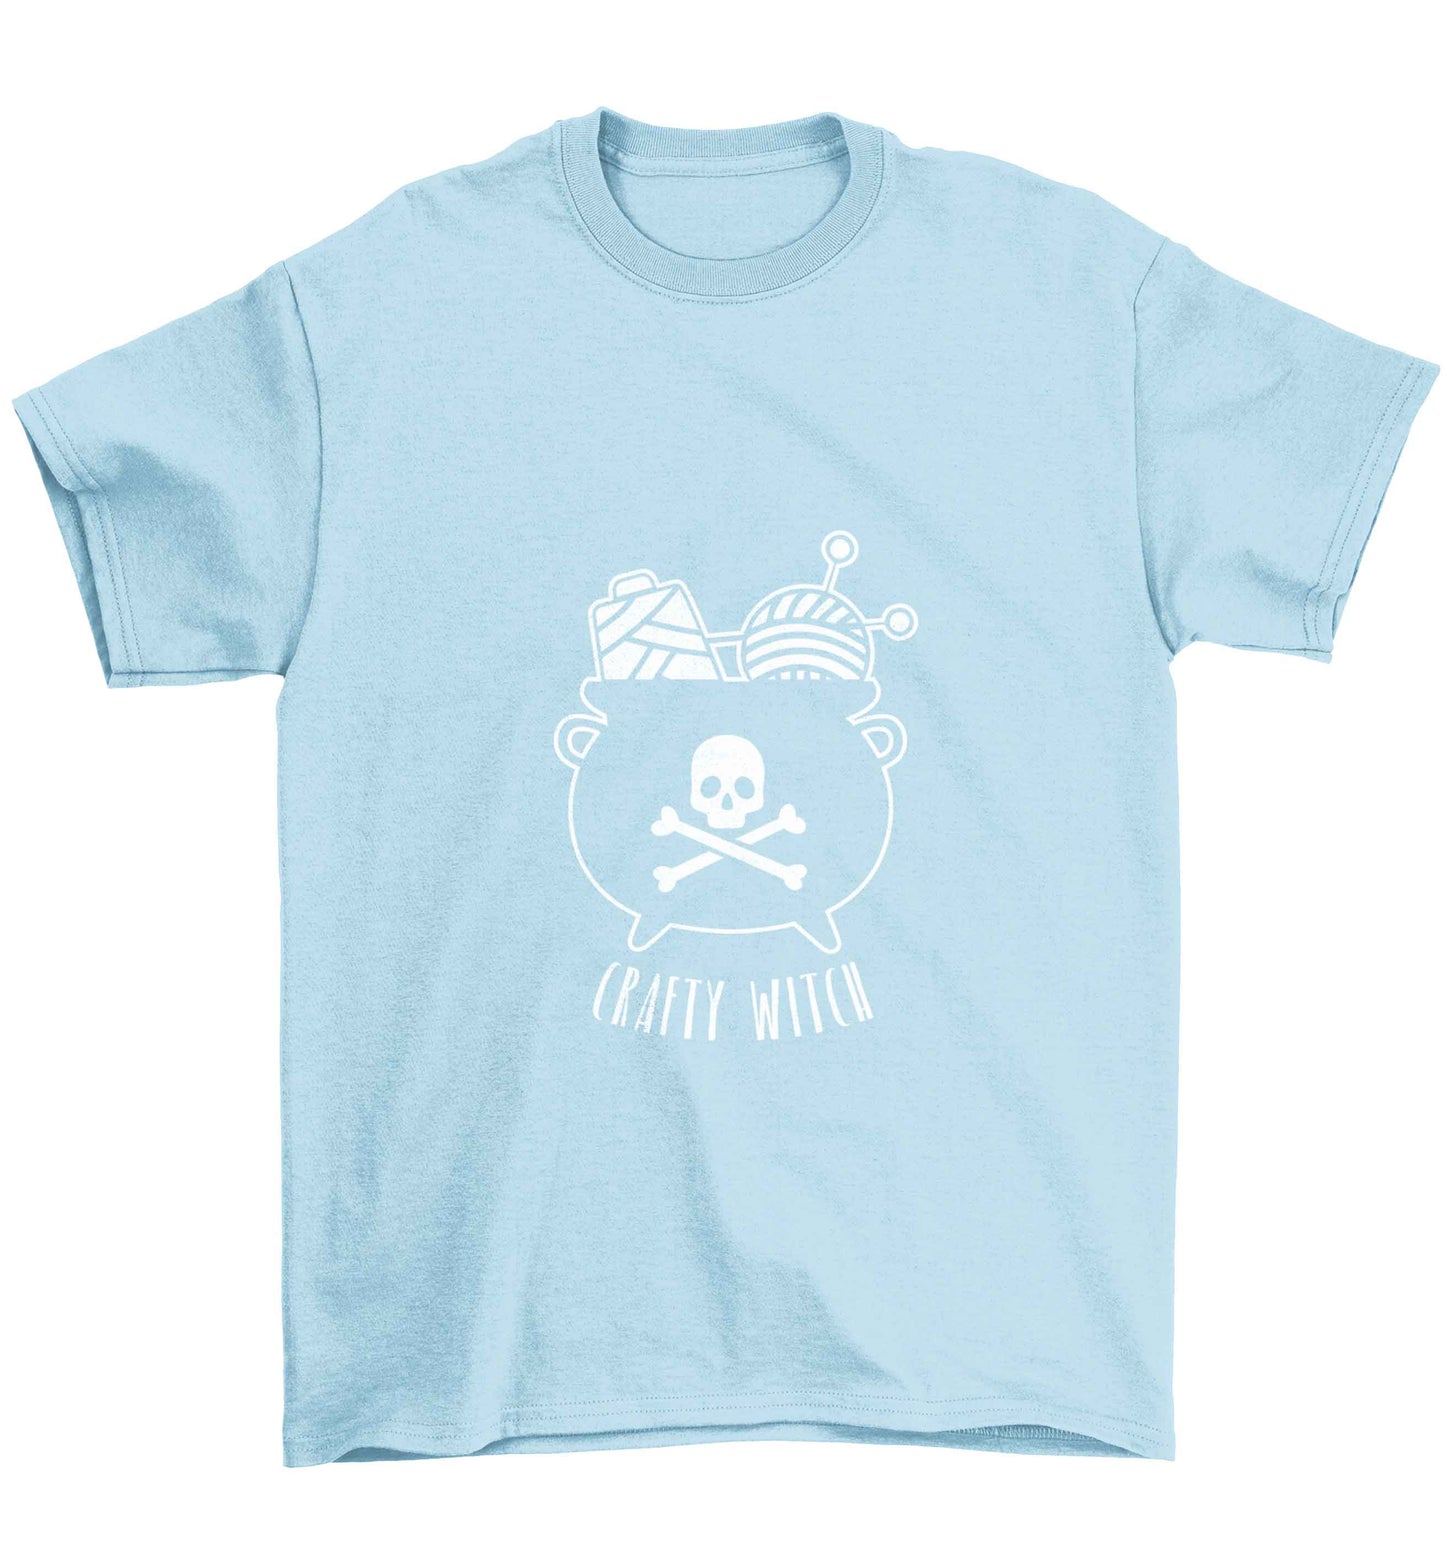 Crafty witch Children's light blue Tshirt 12-13 Years